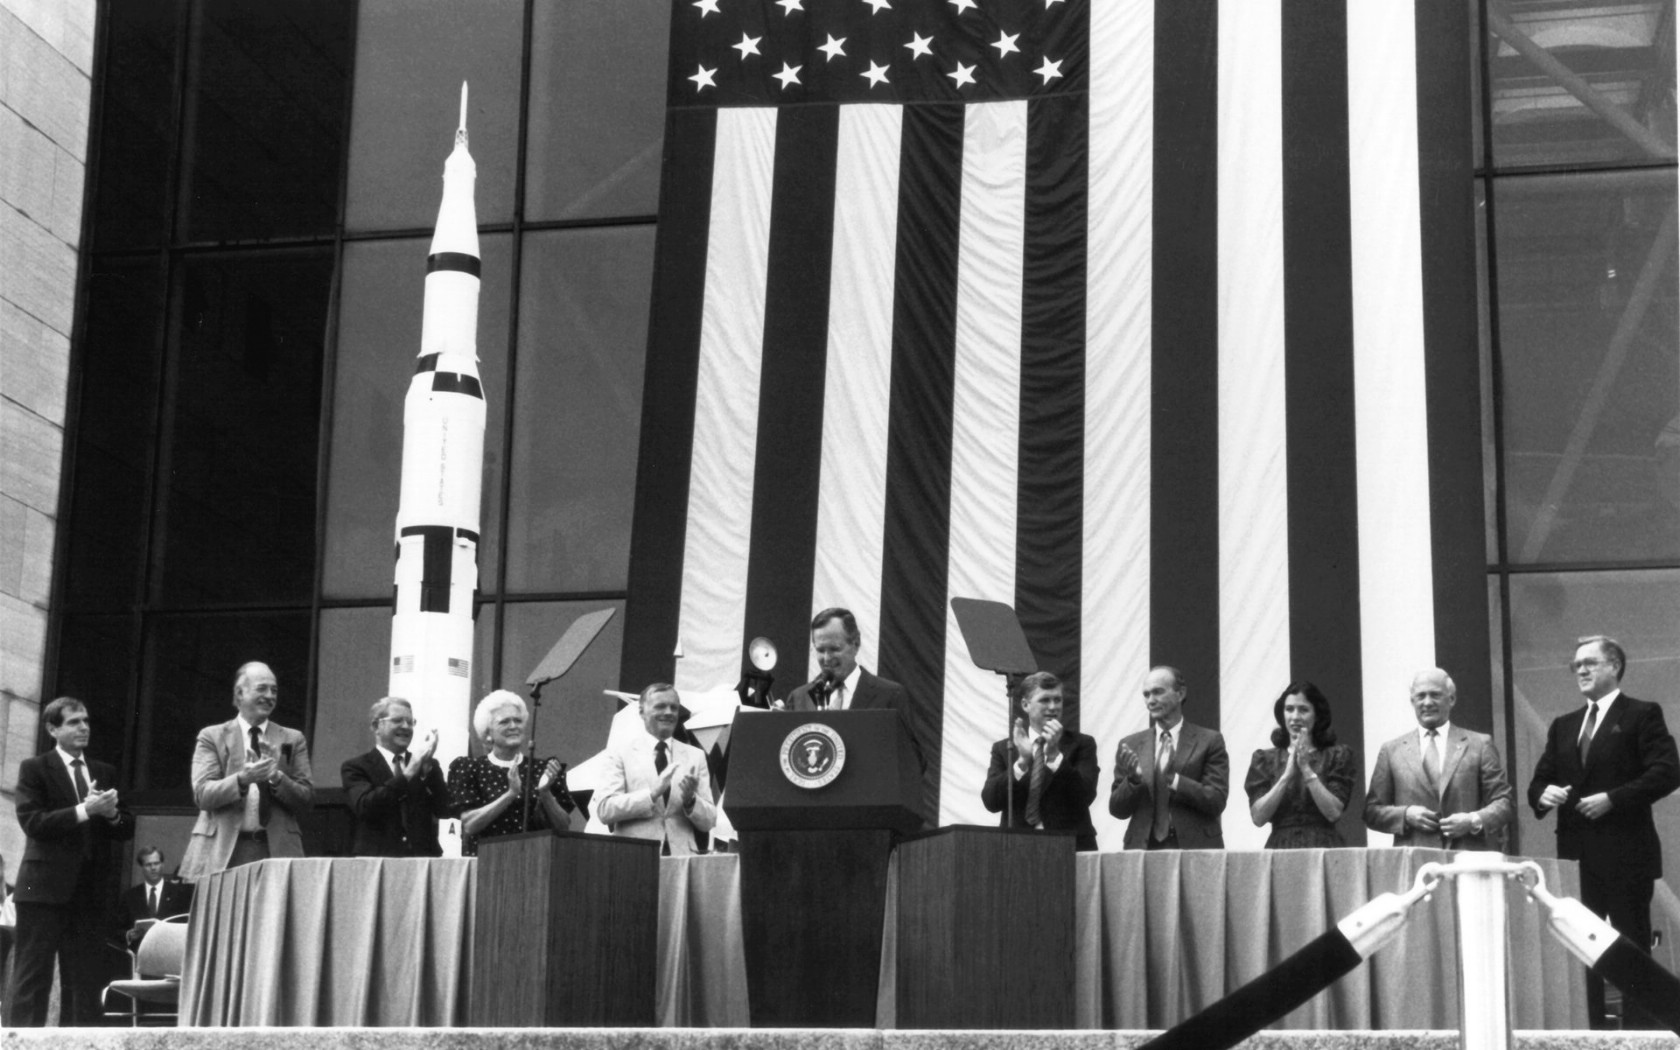 壁纸1680x1050One Giant Leap for Mankind  President George Bush and Apollo 11 Astronauts 1989年老布什总统和登月英雄壁纸 阿波罗11号登月40周年纪念壁纸壁纸 阿波罗11号登月40周年纪念壁纸图片 阿波罗11号登月40周年纪念壁纸素材 人文壁纸 人文图库 人文图片素材桌面壁纸